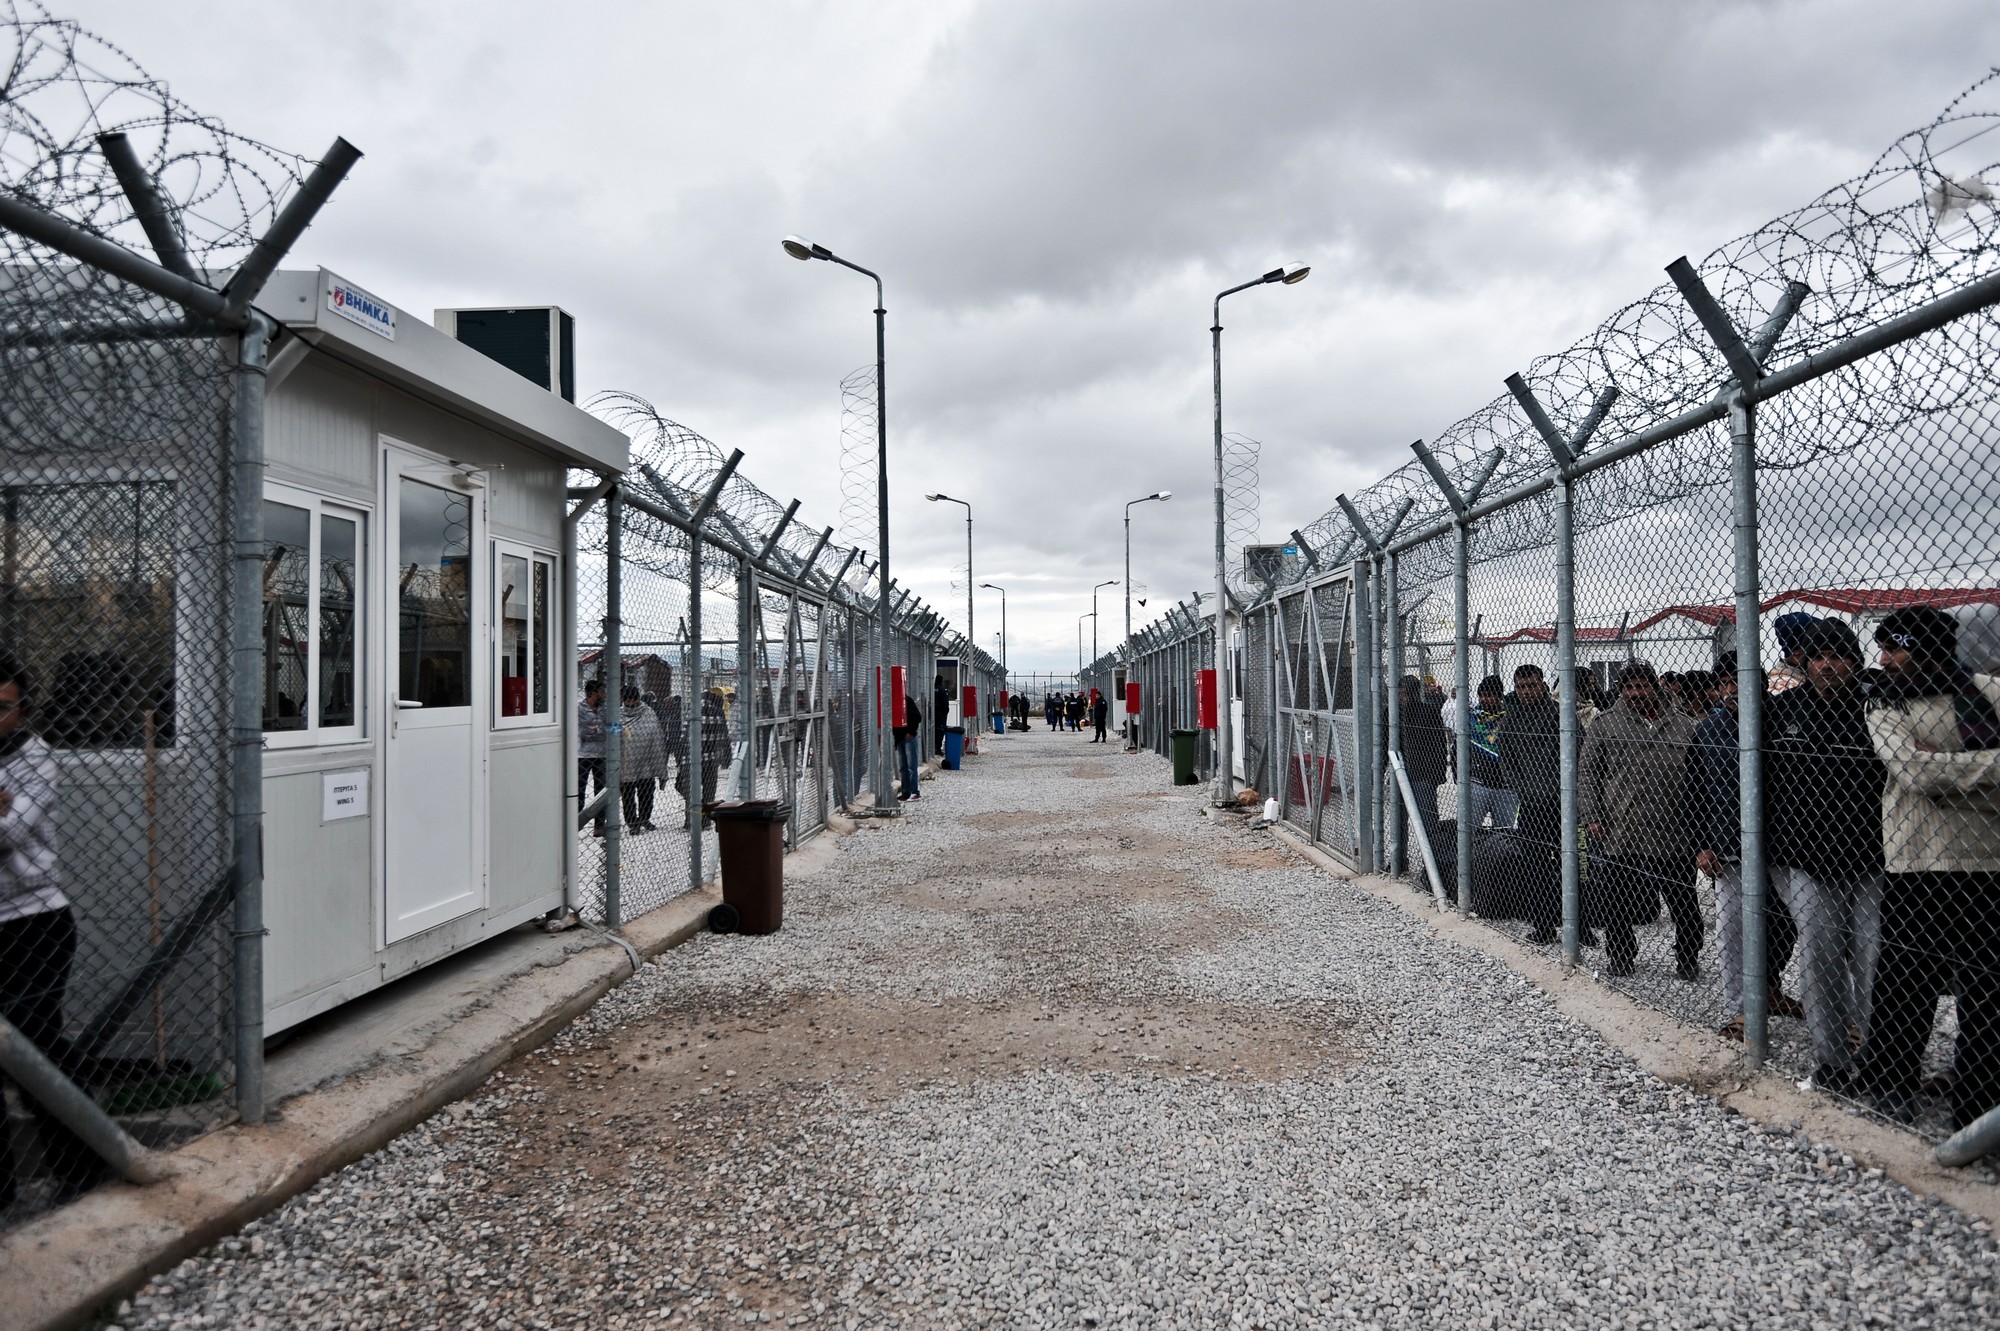 Αλαλούμ με τα κλειστά κέντρα αλλοδαπών: «Τώρα θα προχωρήσουμε κανονικά» λέει η κυβέρνηση